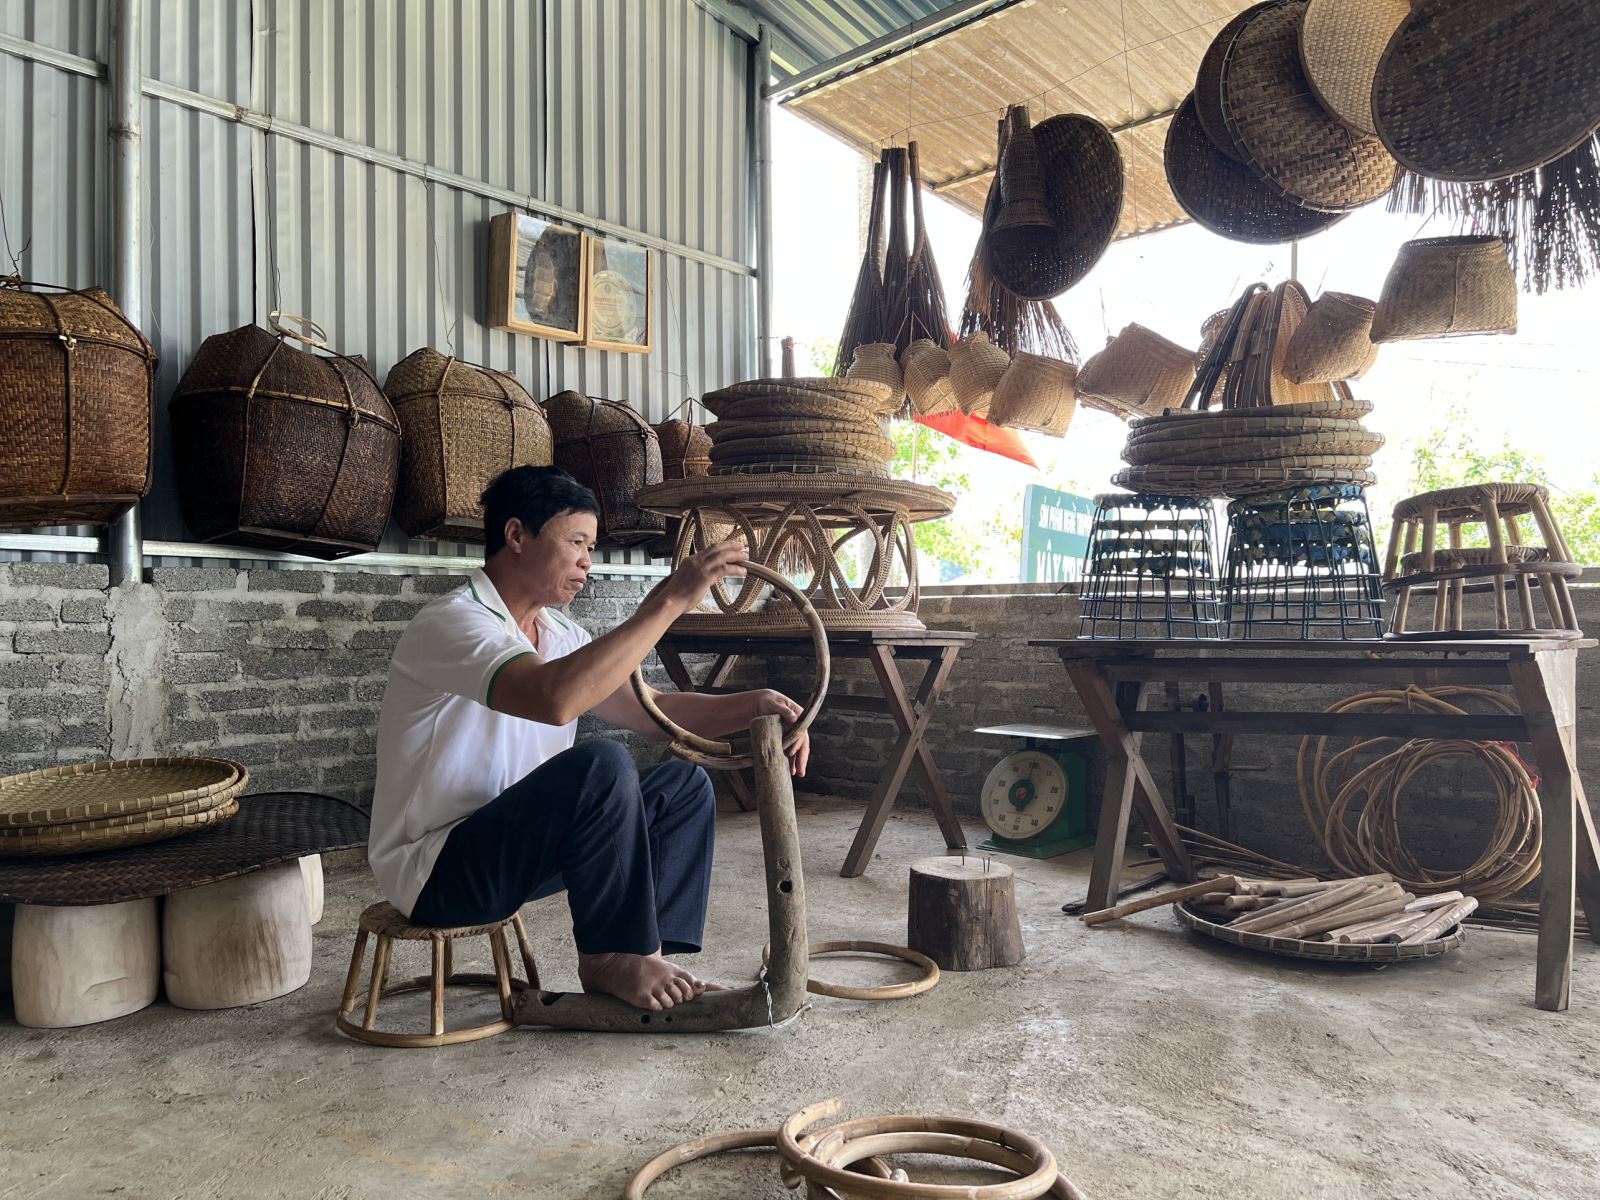 Mây tre đan là một trong những nghề truyền thống có từ lâu đời của đồng bào dân tộc Thái tại xã Nà Tấu 1, thành phố Điện Biên Phủ, tỉnh Điện Biên. Những sản phẩm mây tre đan đang được bà con vùng đất này lưu truyền, góp phần gìn giữ nét văn hóa truyền thống của đồng bào, người dân nơi đây.